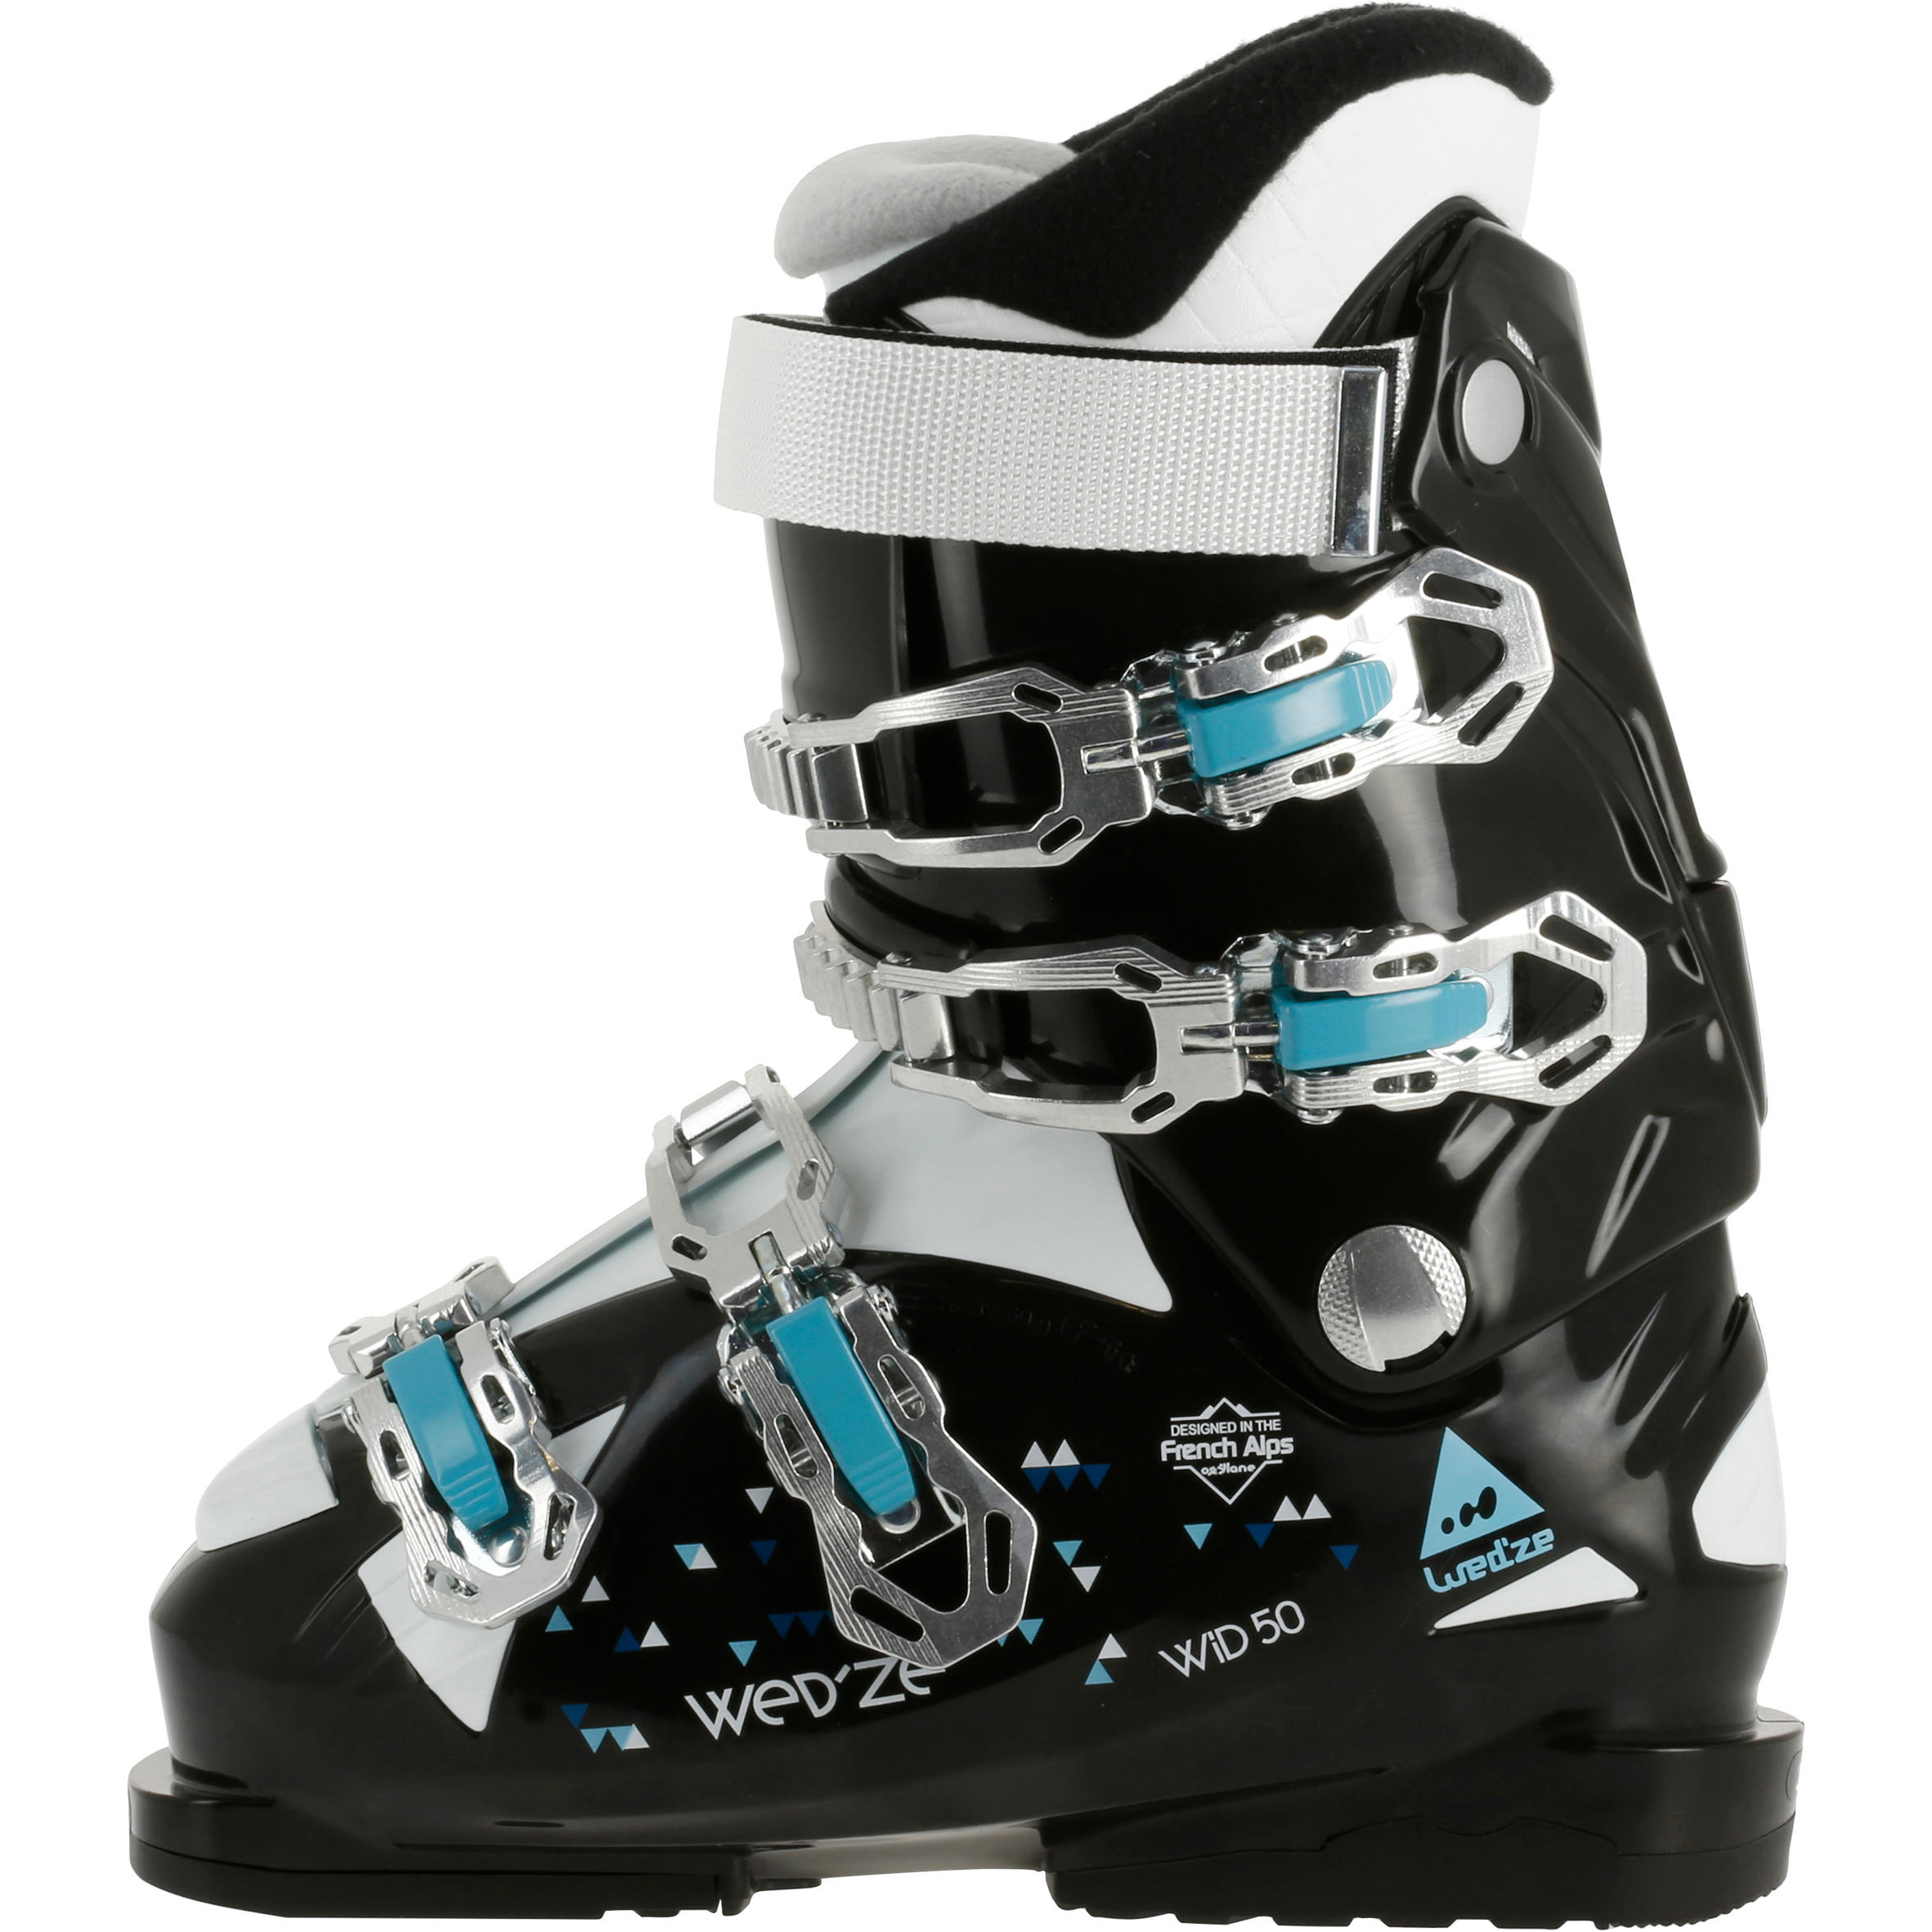 WID 50 Women's Ski Boots - Black 2/11